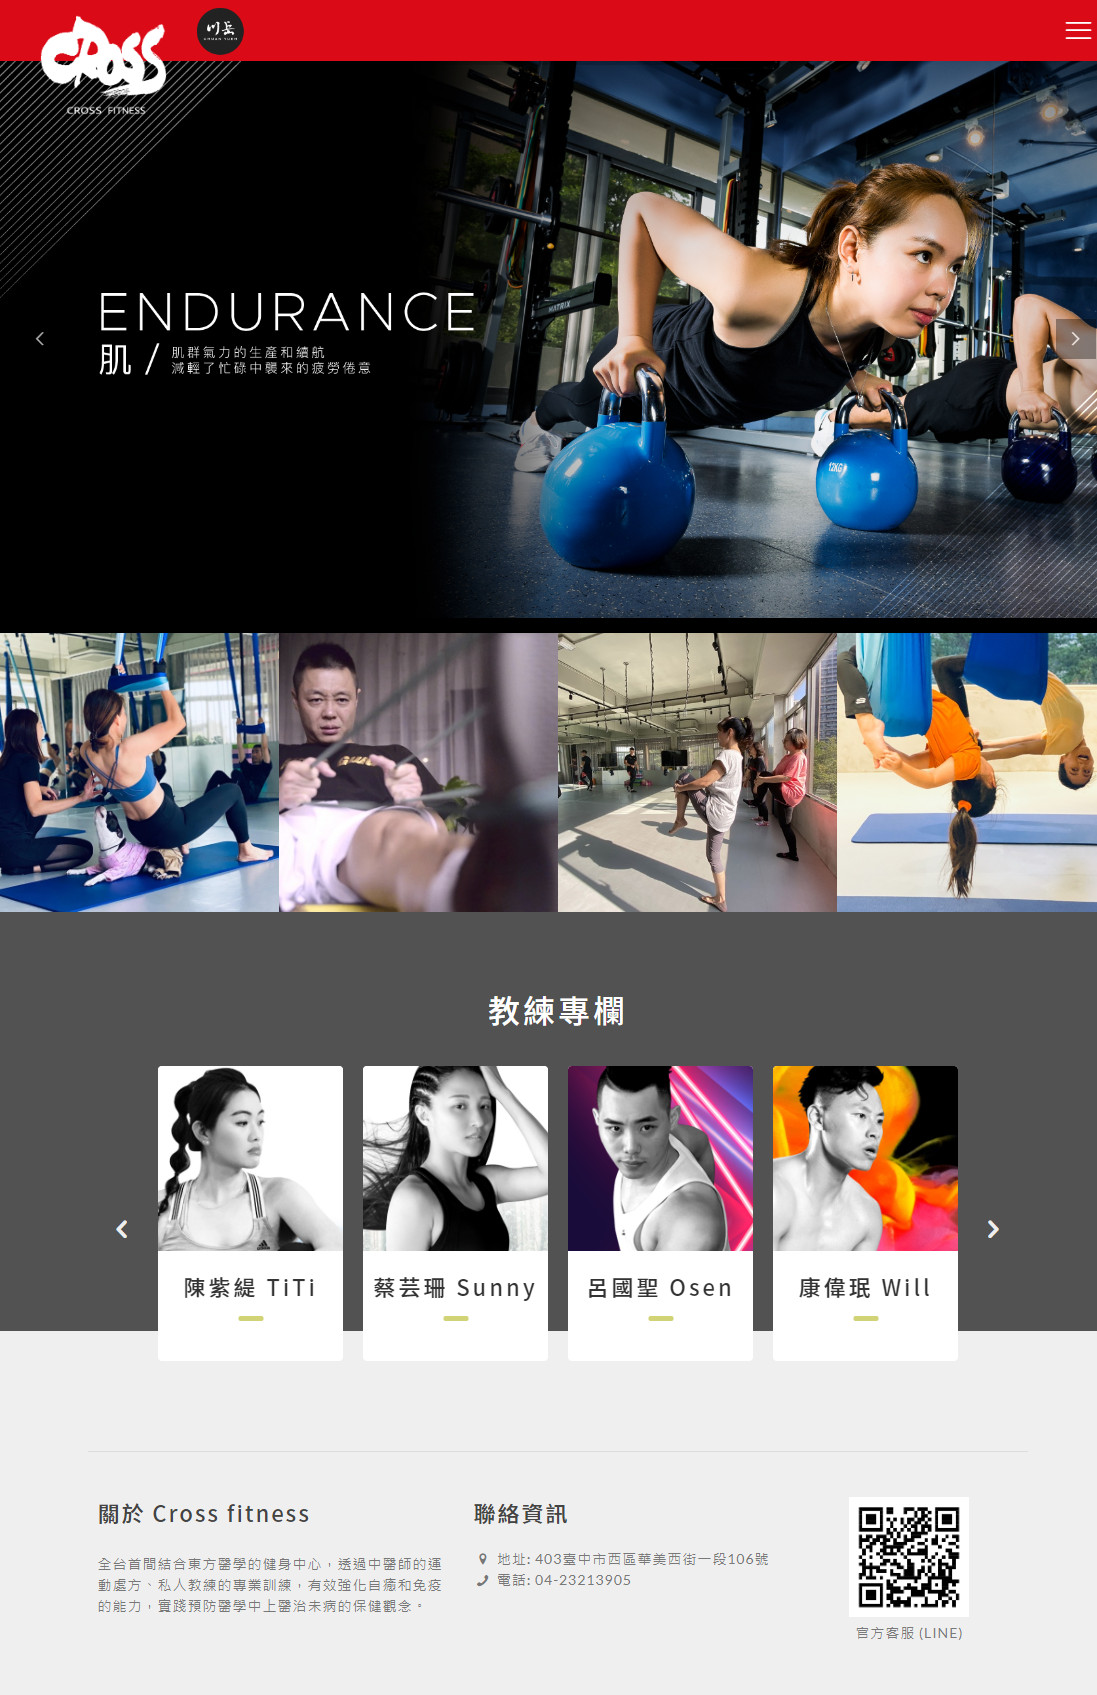 川岳中醫/Cross fitness 響應式診所網站設計
網站設計